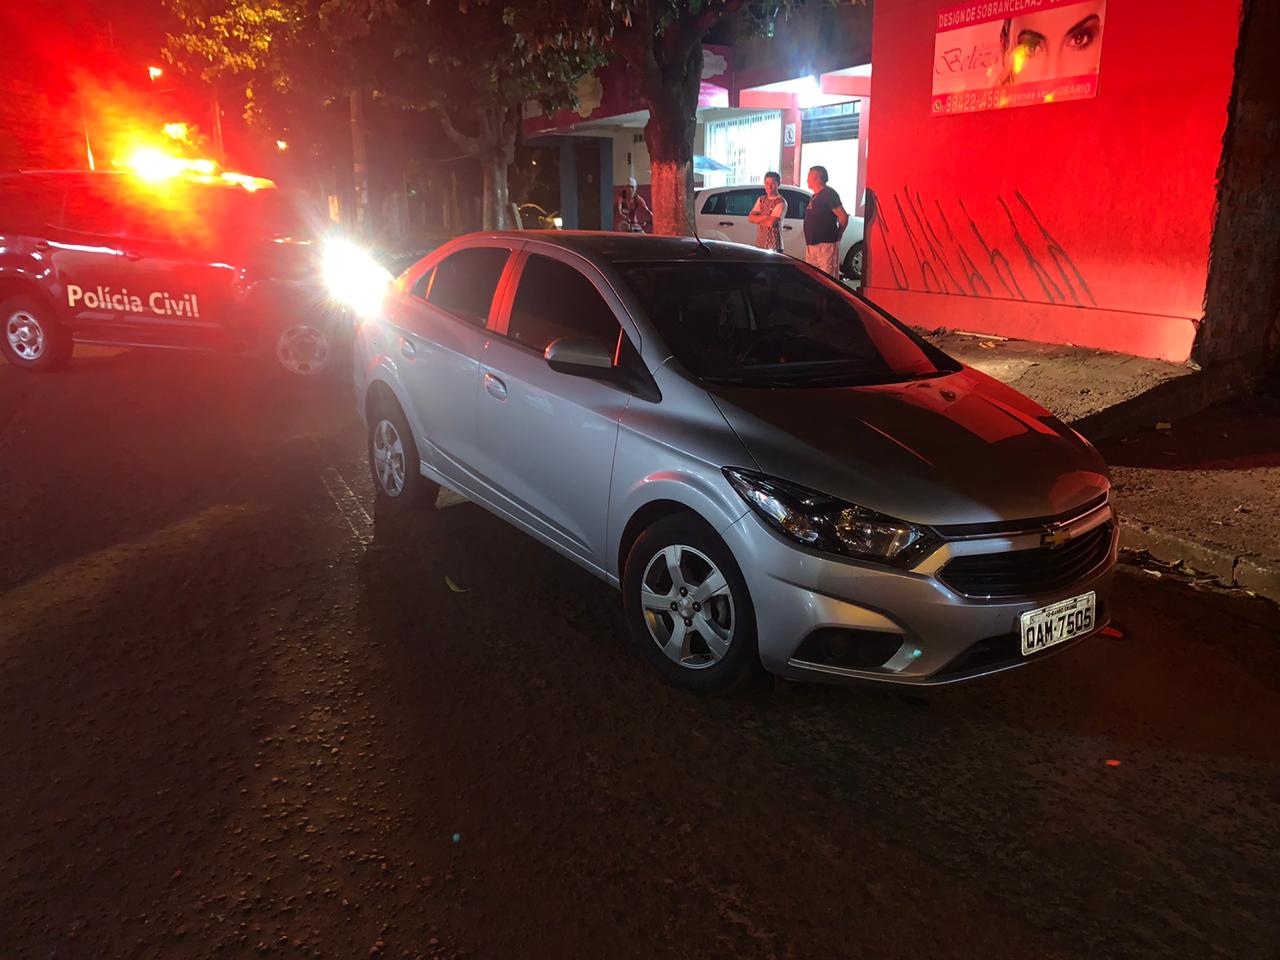 Polícia Civil recupera veículo roubado nesta sexta-feira, em Campo Grande, e prende autor